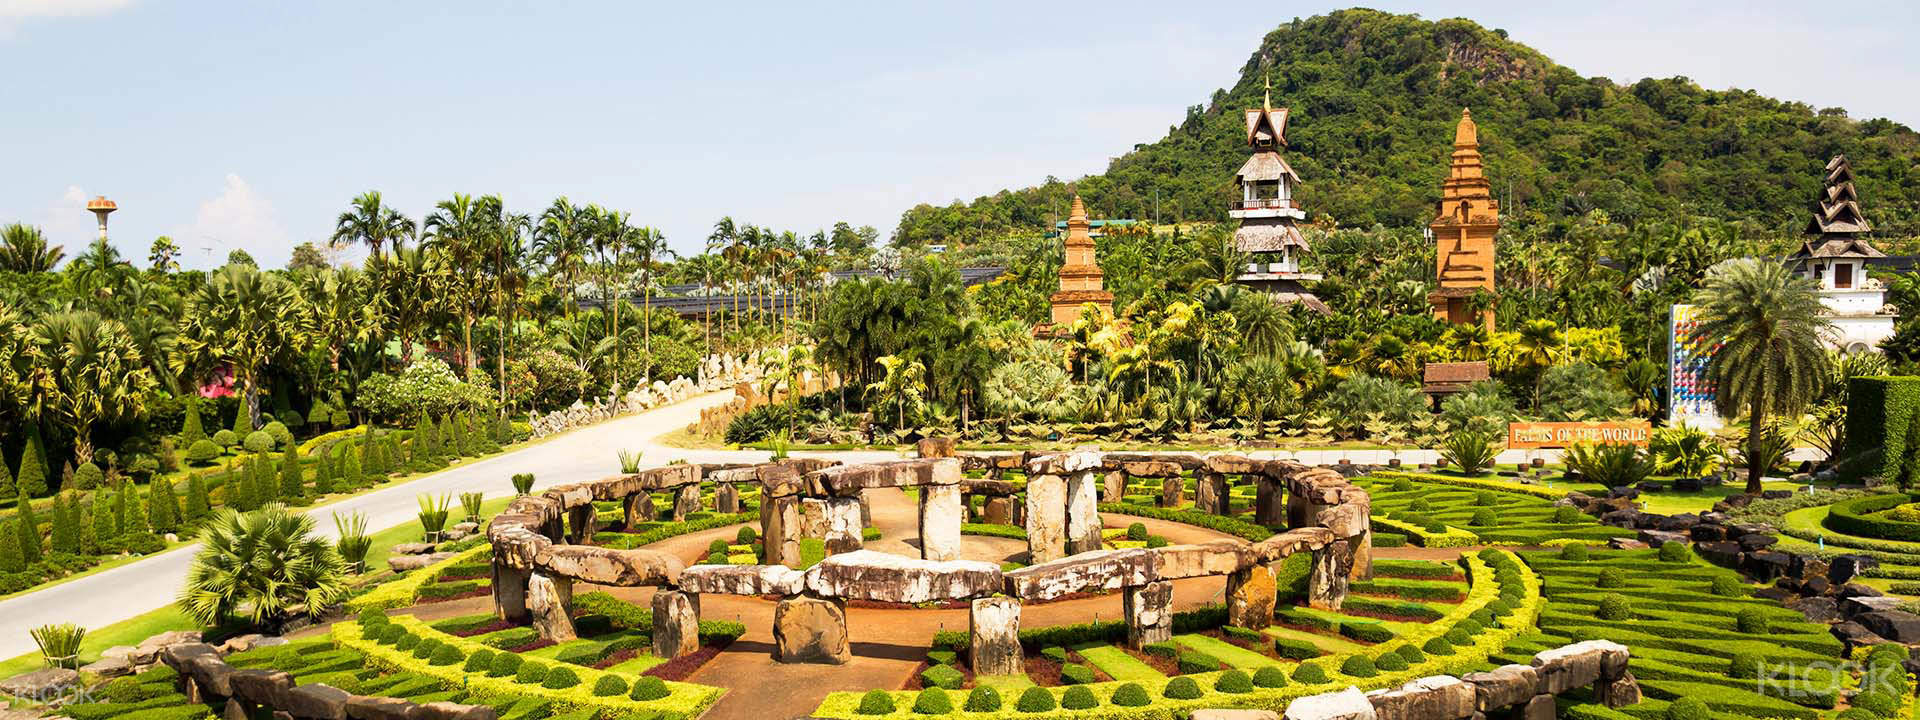 Du lịch Thái Lan ghé thăm Vườn thực vật Nong Nooch